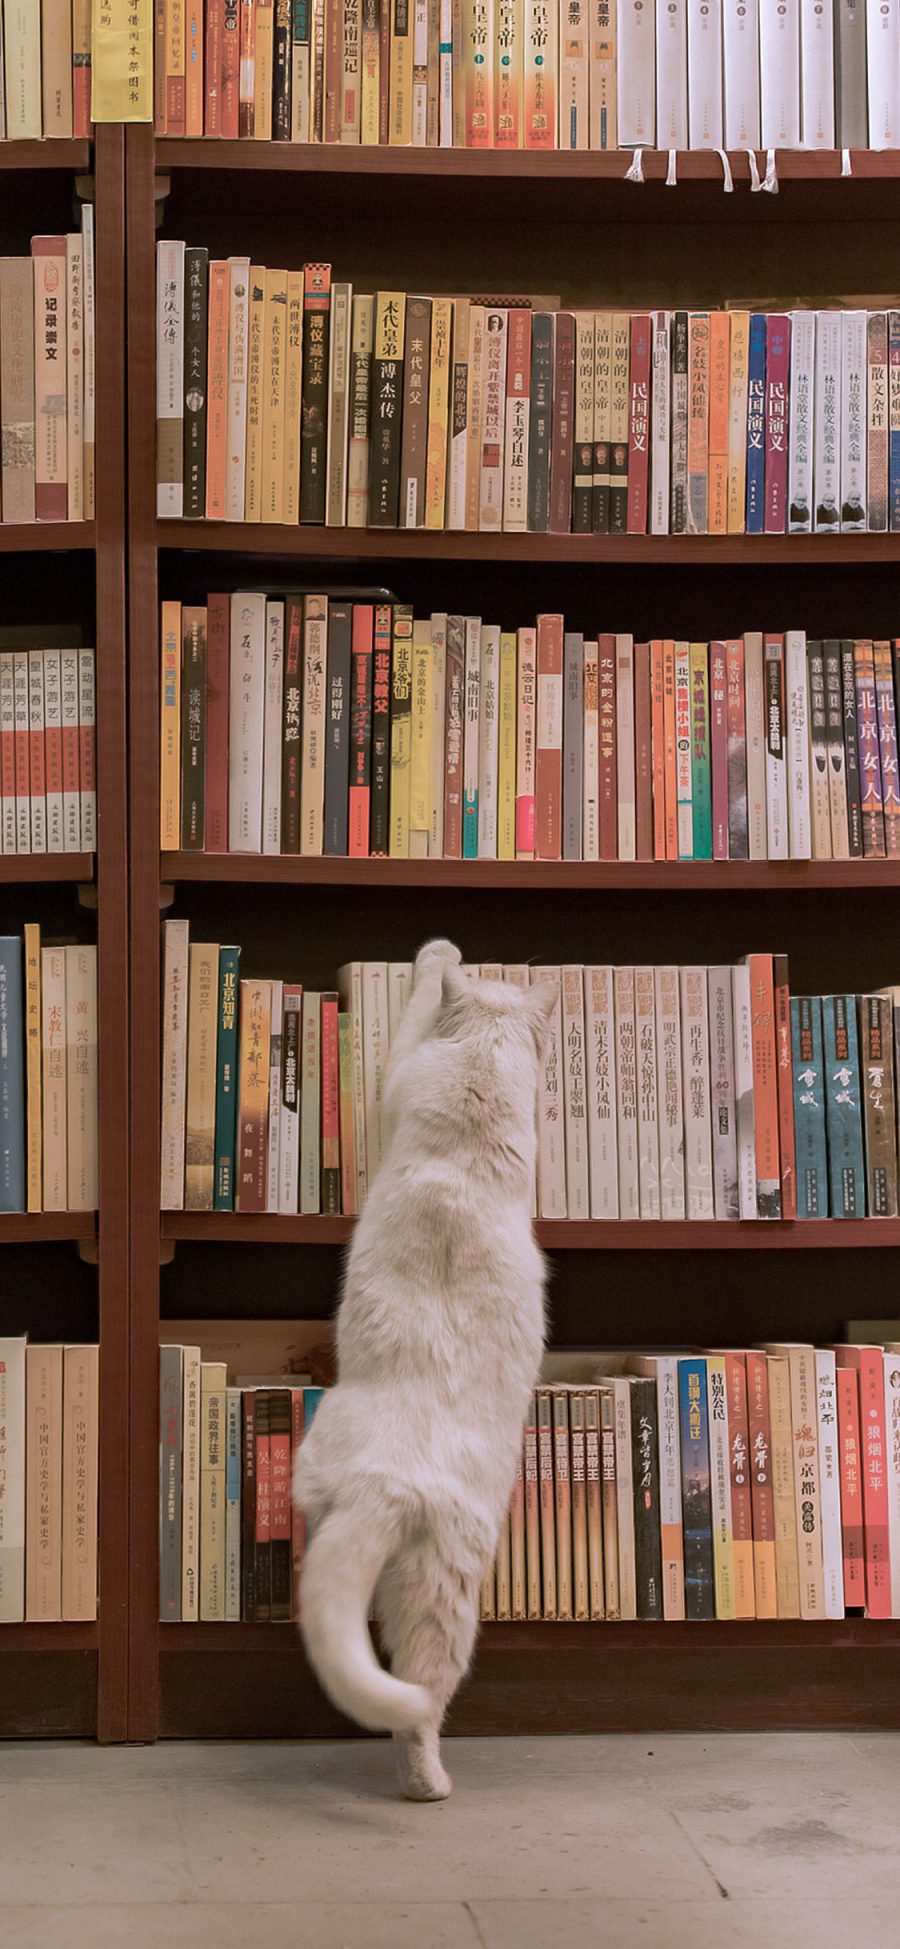 [2436×1125]图书馆 书架 猫咪 背影 白色 苹果手机壁纸图片